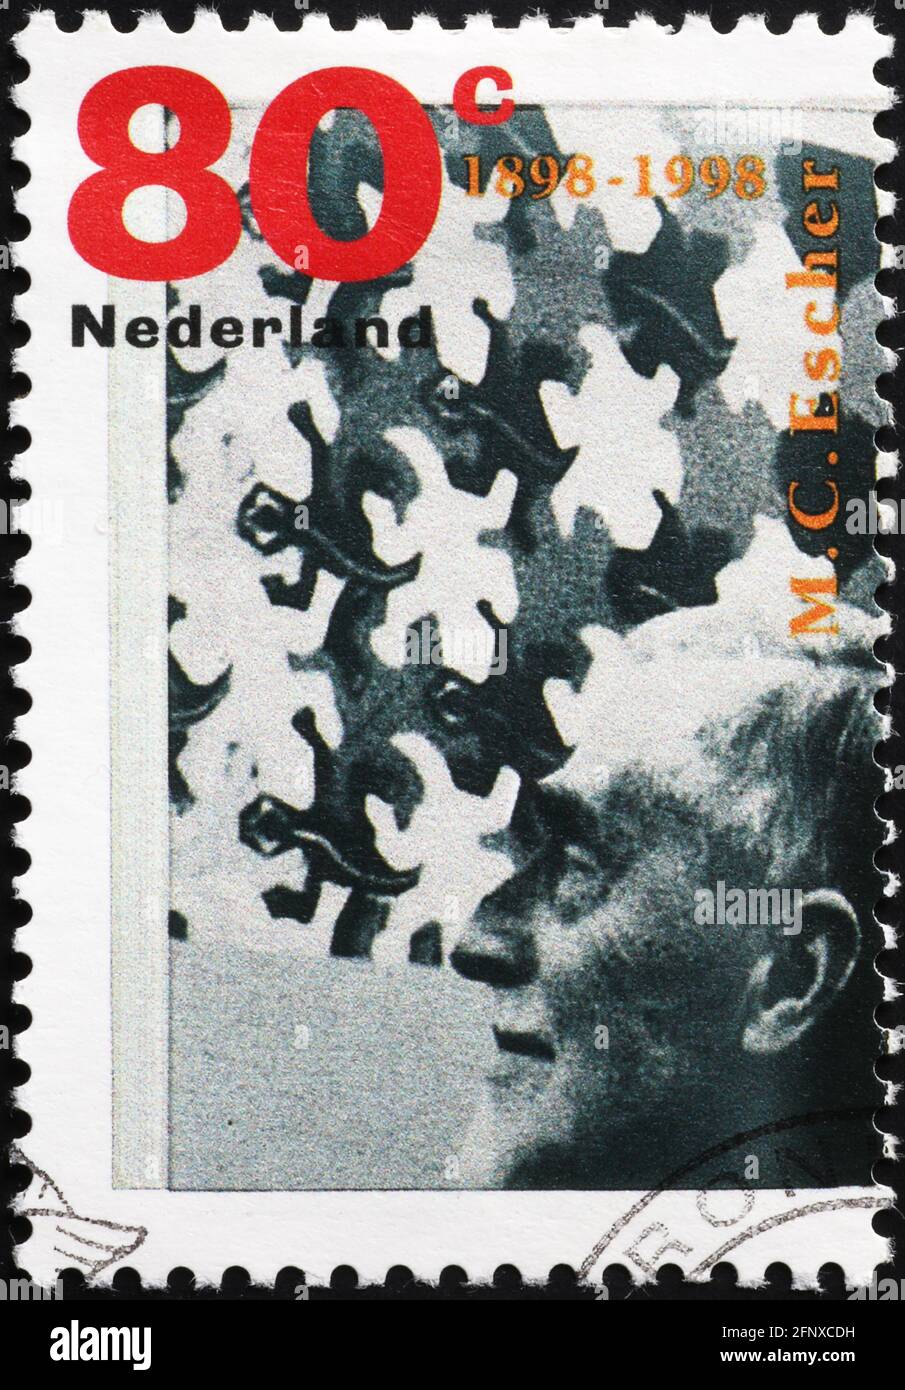 Portrait of Escher on dutch postage stamp Stock Photo